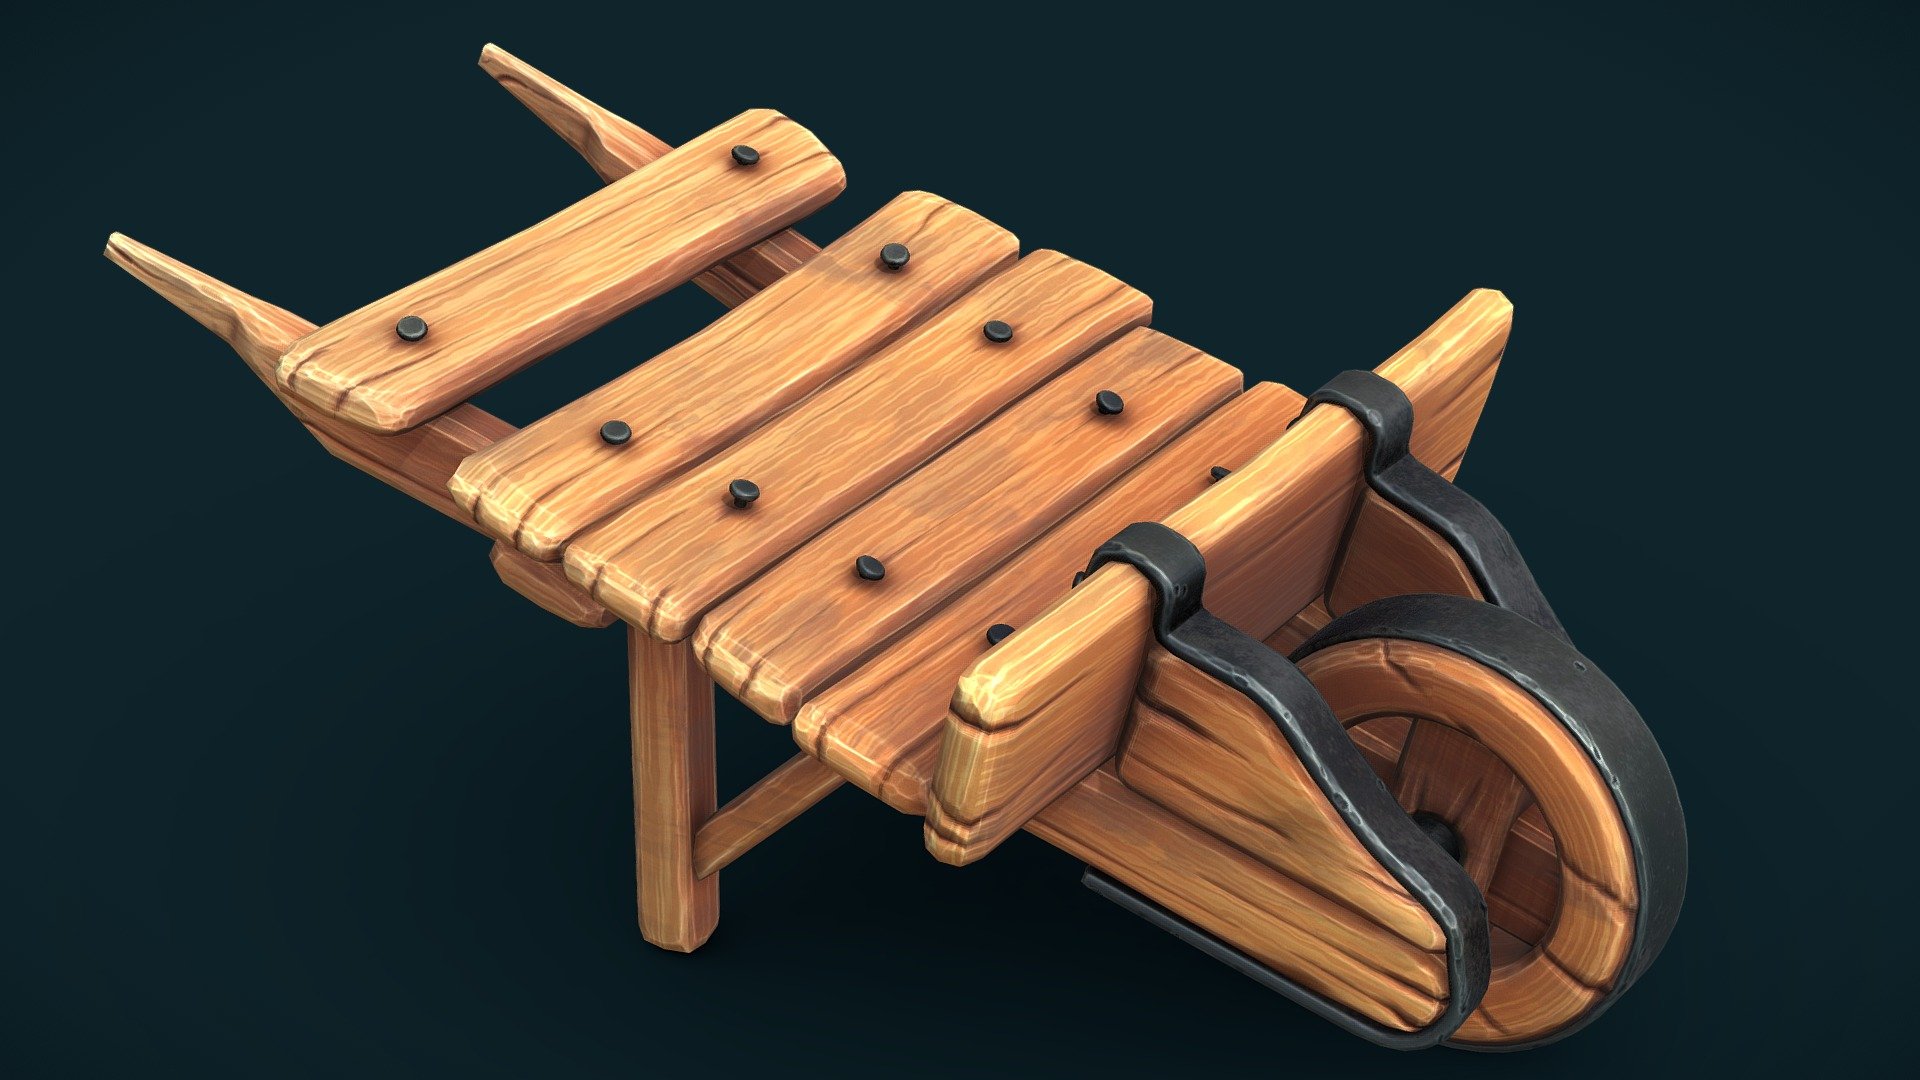 Stylized wooden cart - 3D model by seenoise 3d model